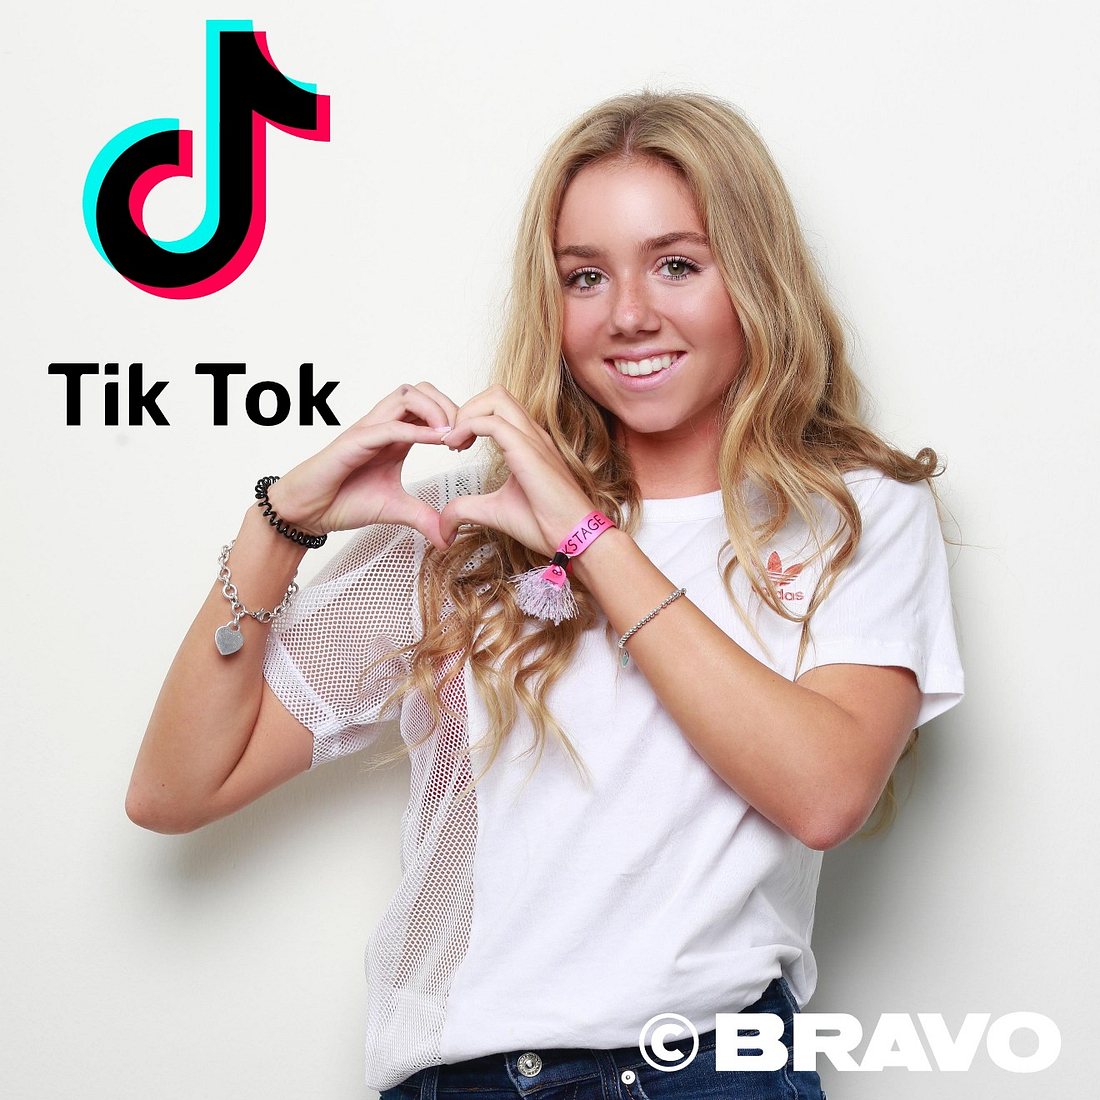 Dalia hat über 4,7 Millionen Follower auf TikTok (Stand Mai 2020)